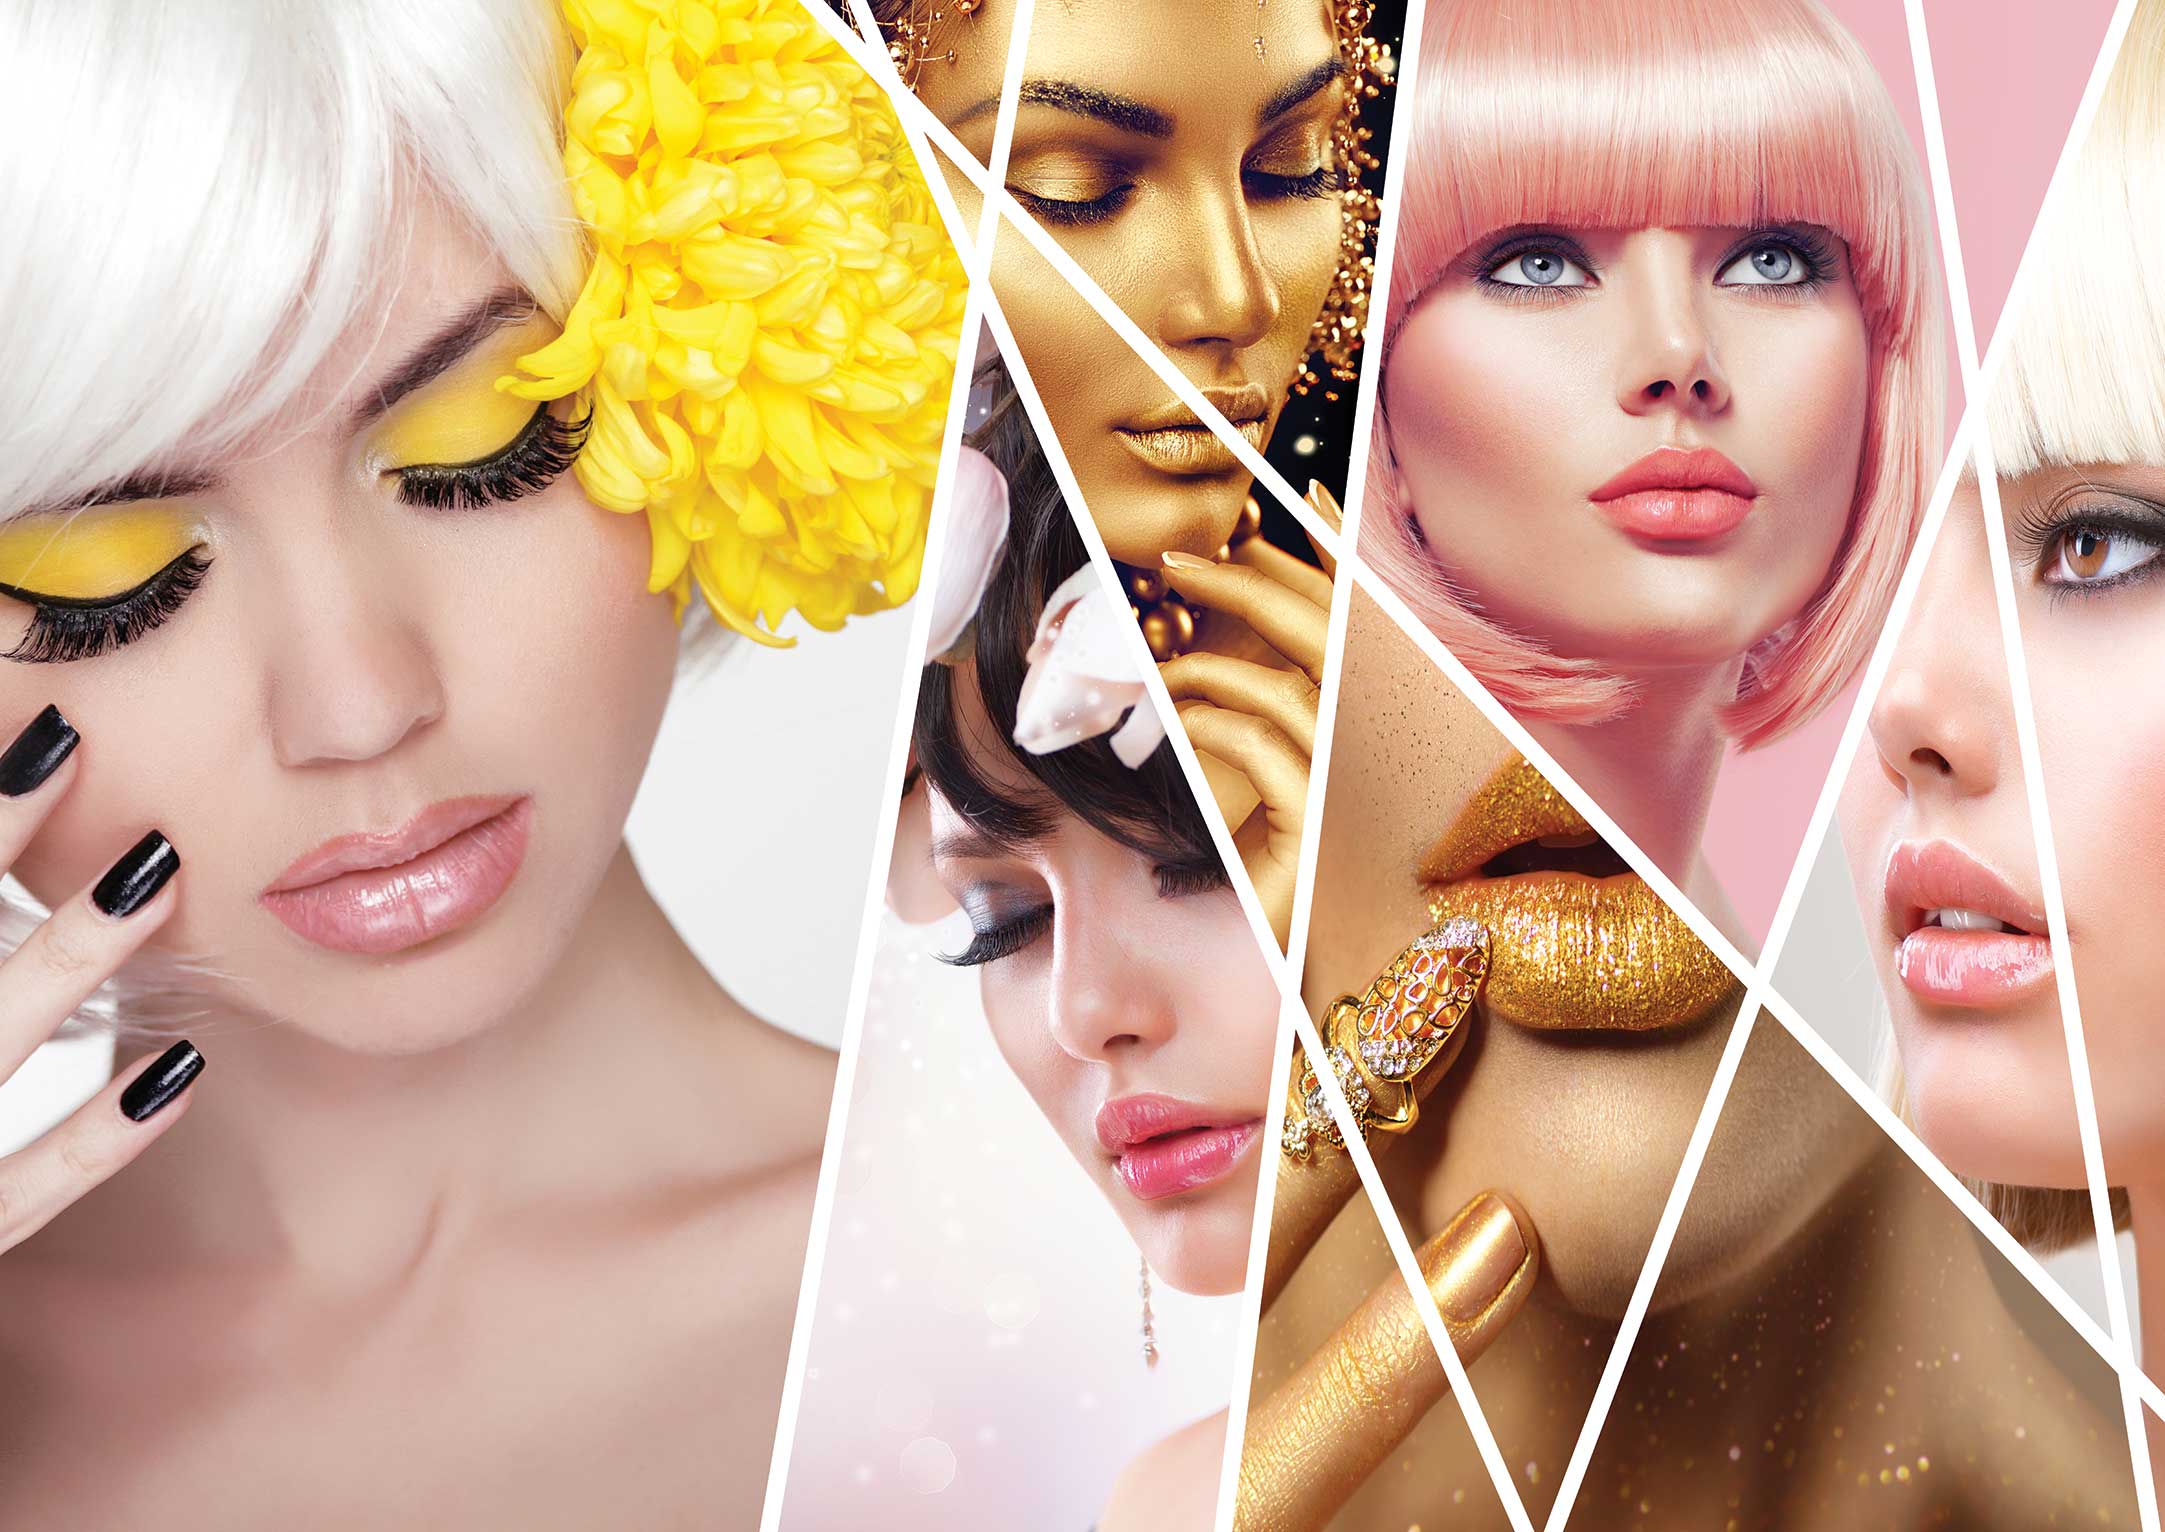 معرفی بهترین طرح های پوستر دیواری برای سالن زیبایی و آرایشگاه زنانه